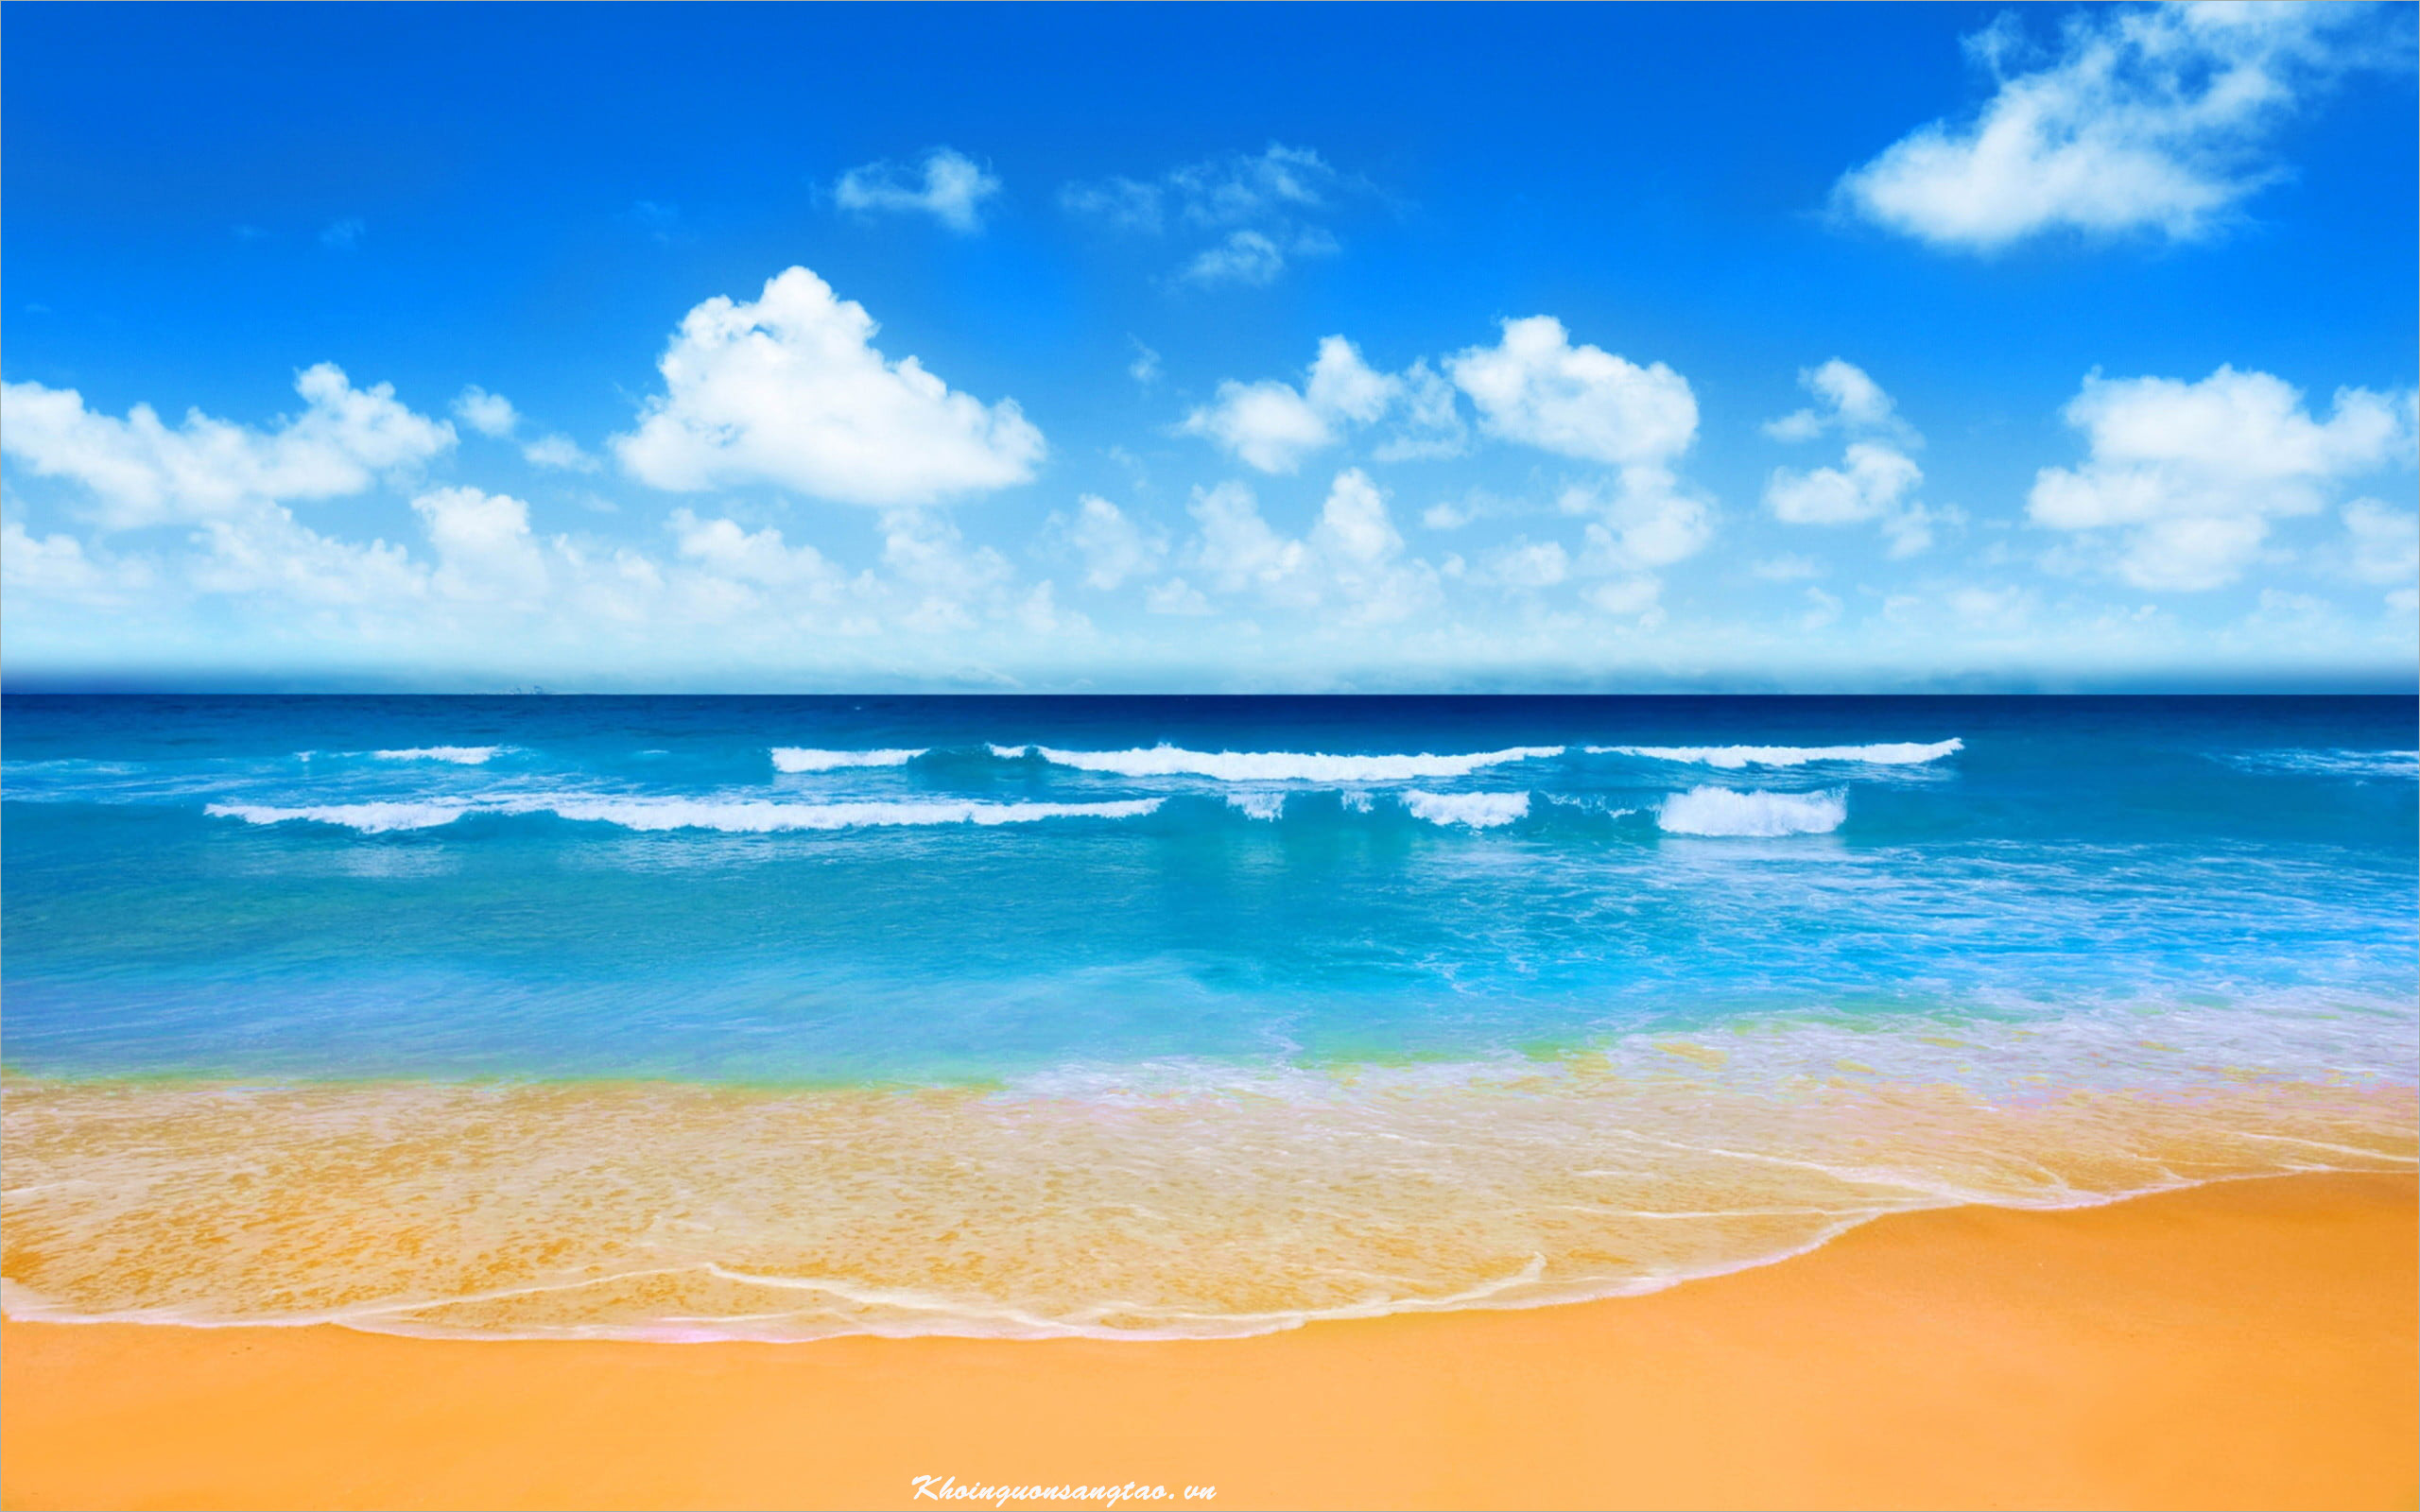 Hình nền sóng biển tuyệt đẹp sẽ mang lại cho bạn thêm niềm vui và phấn khởi mỗi khi sử dụng điện thoại. Với những bức ảnh sống động, bạn sẽ cảm nhận được bầu không khí mát mẻ của biển trong lòng tuần lộc và cảm giác thanh thản khi ngắm nhìn những khung cảnh tuyệt đẹp nơi đại dương.